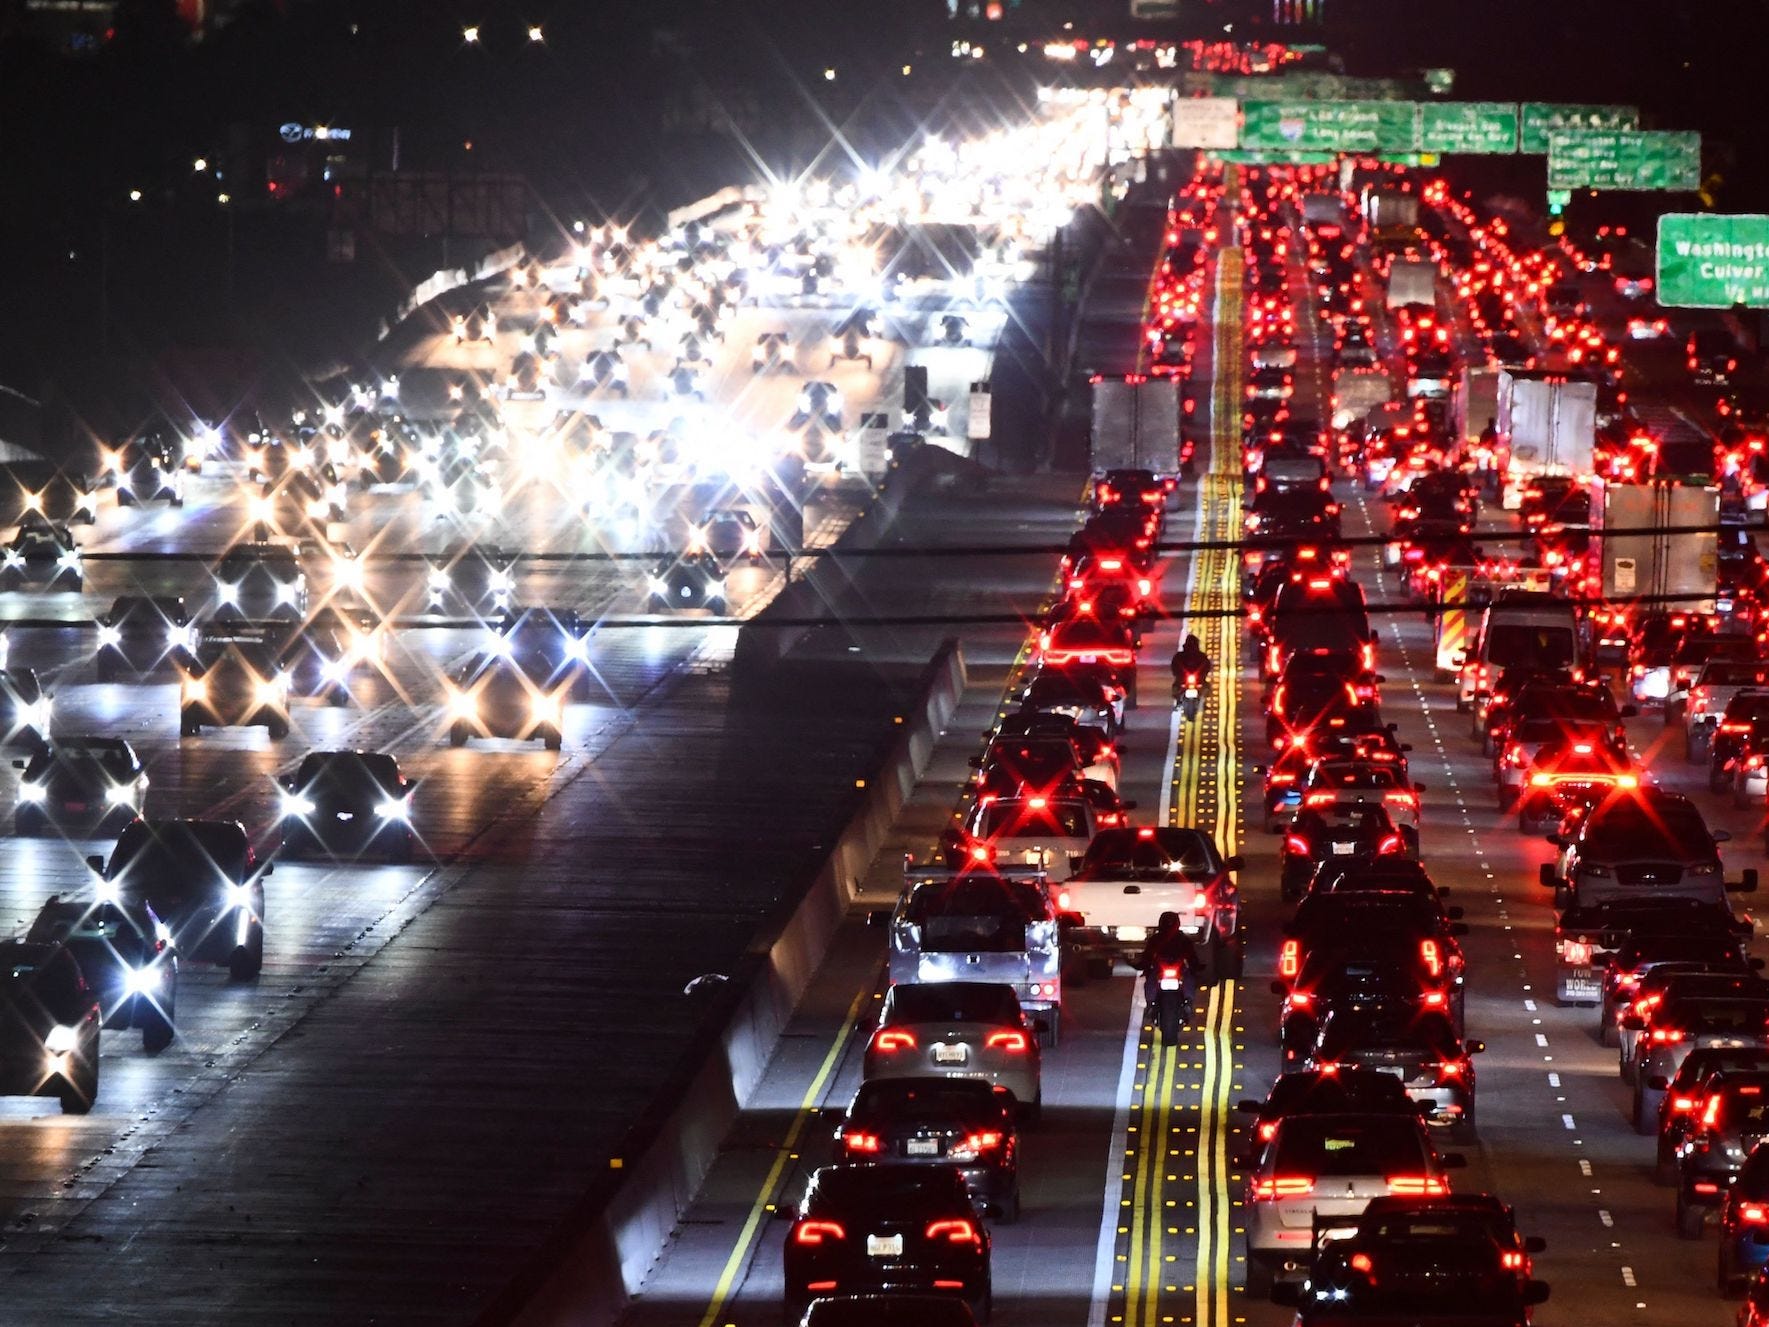 405 Freeway di California selama lalu lintas jam sibuk.